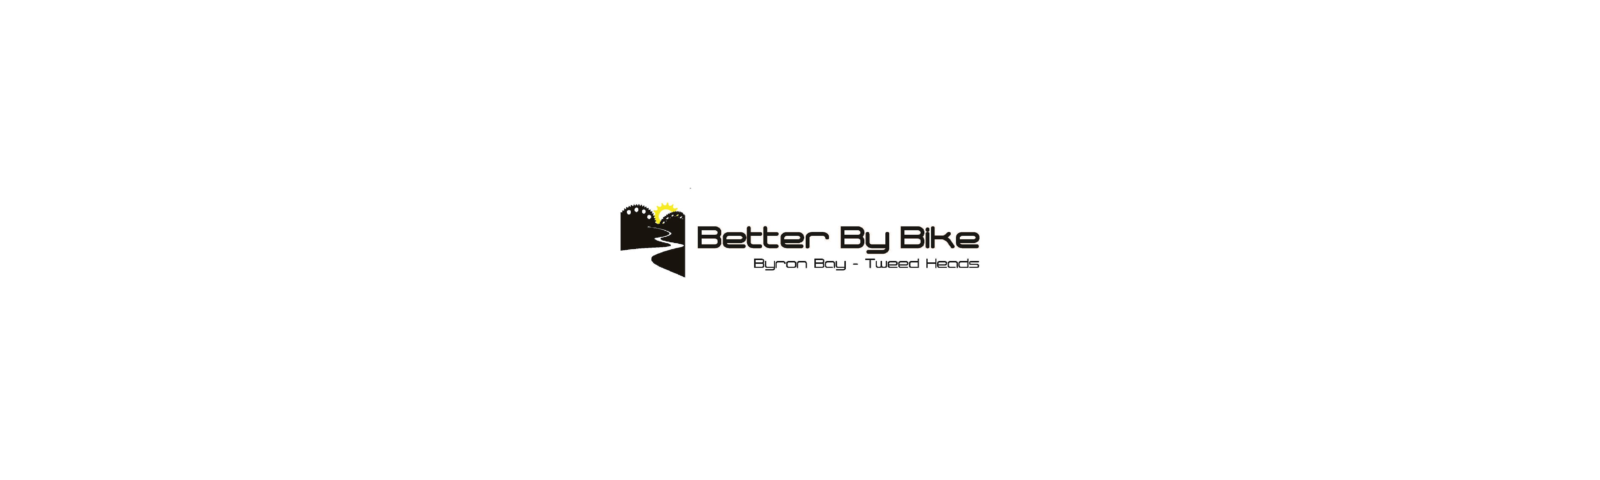 Better by Bike